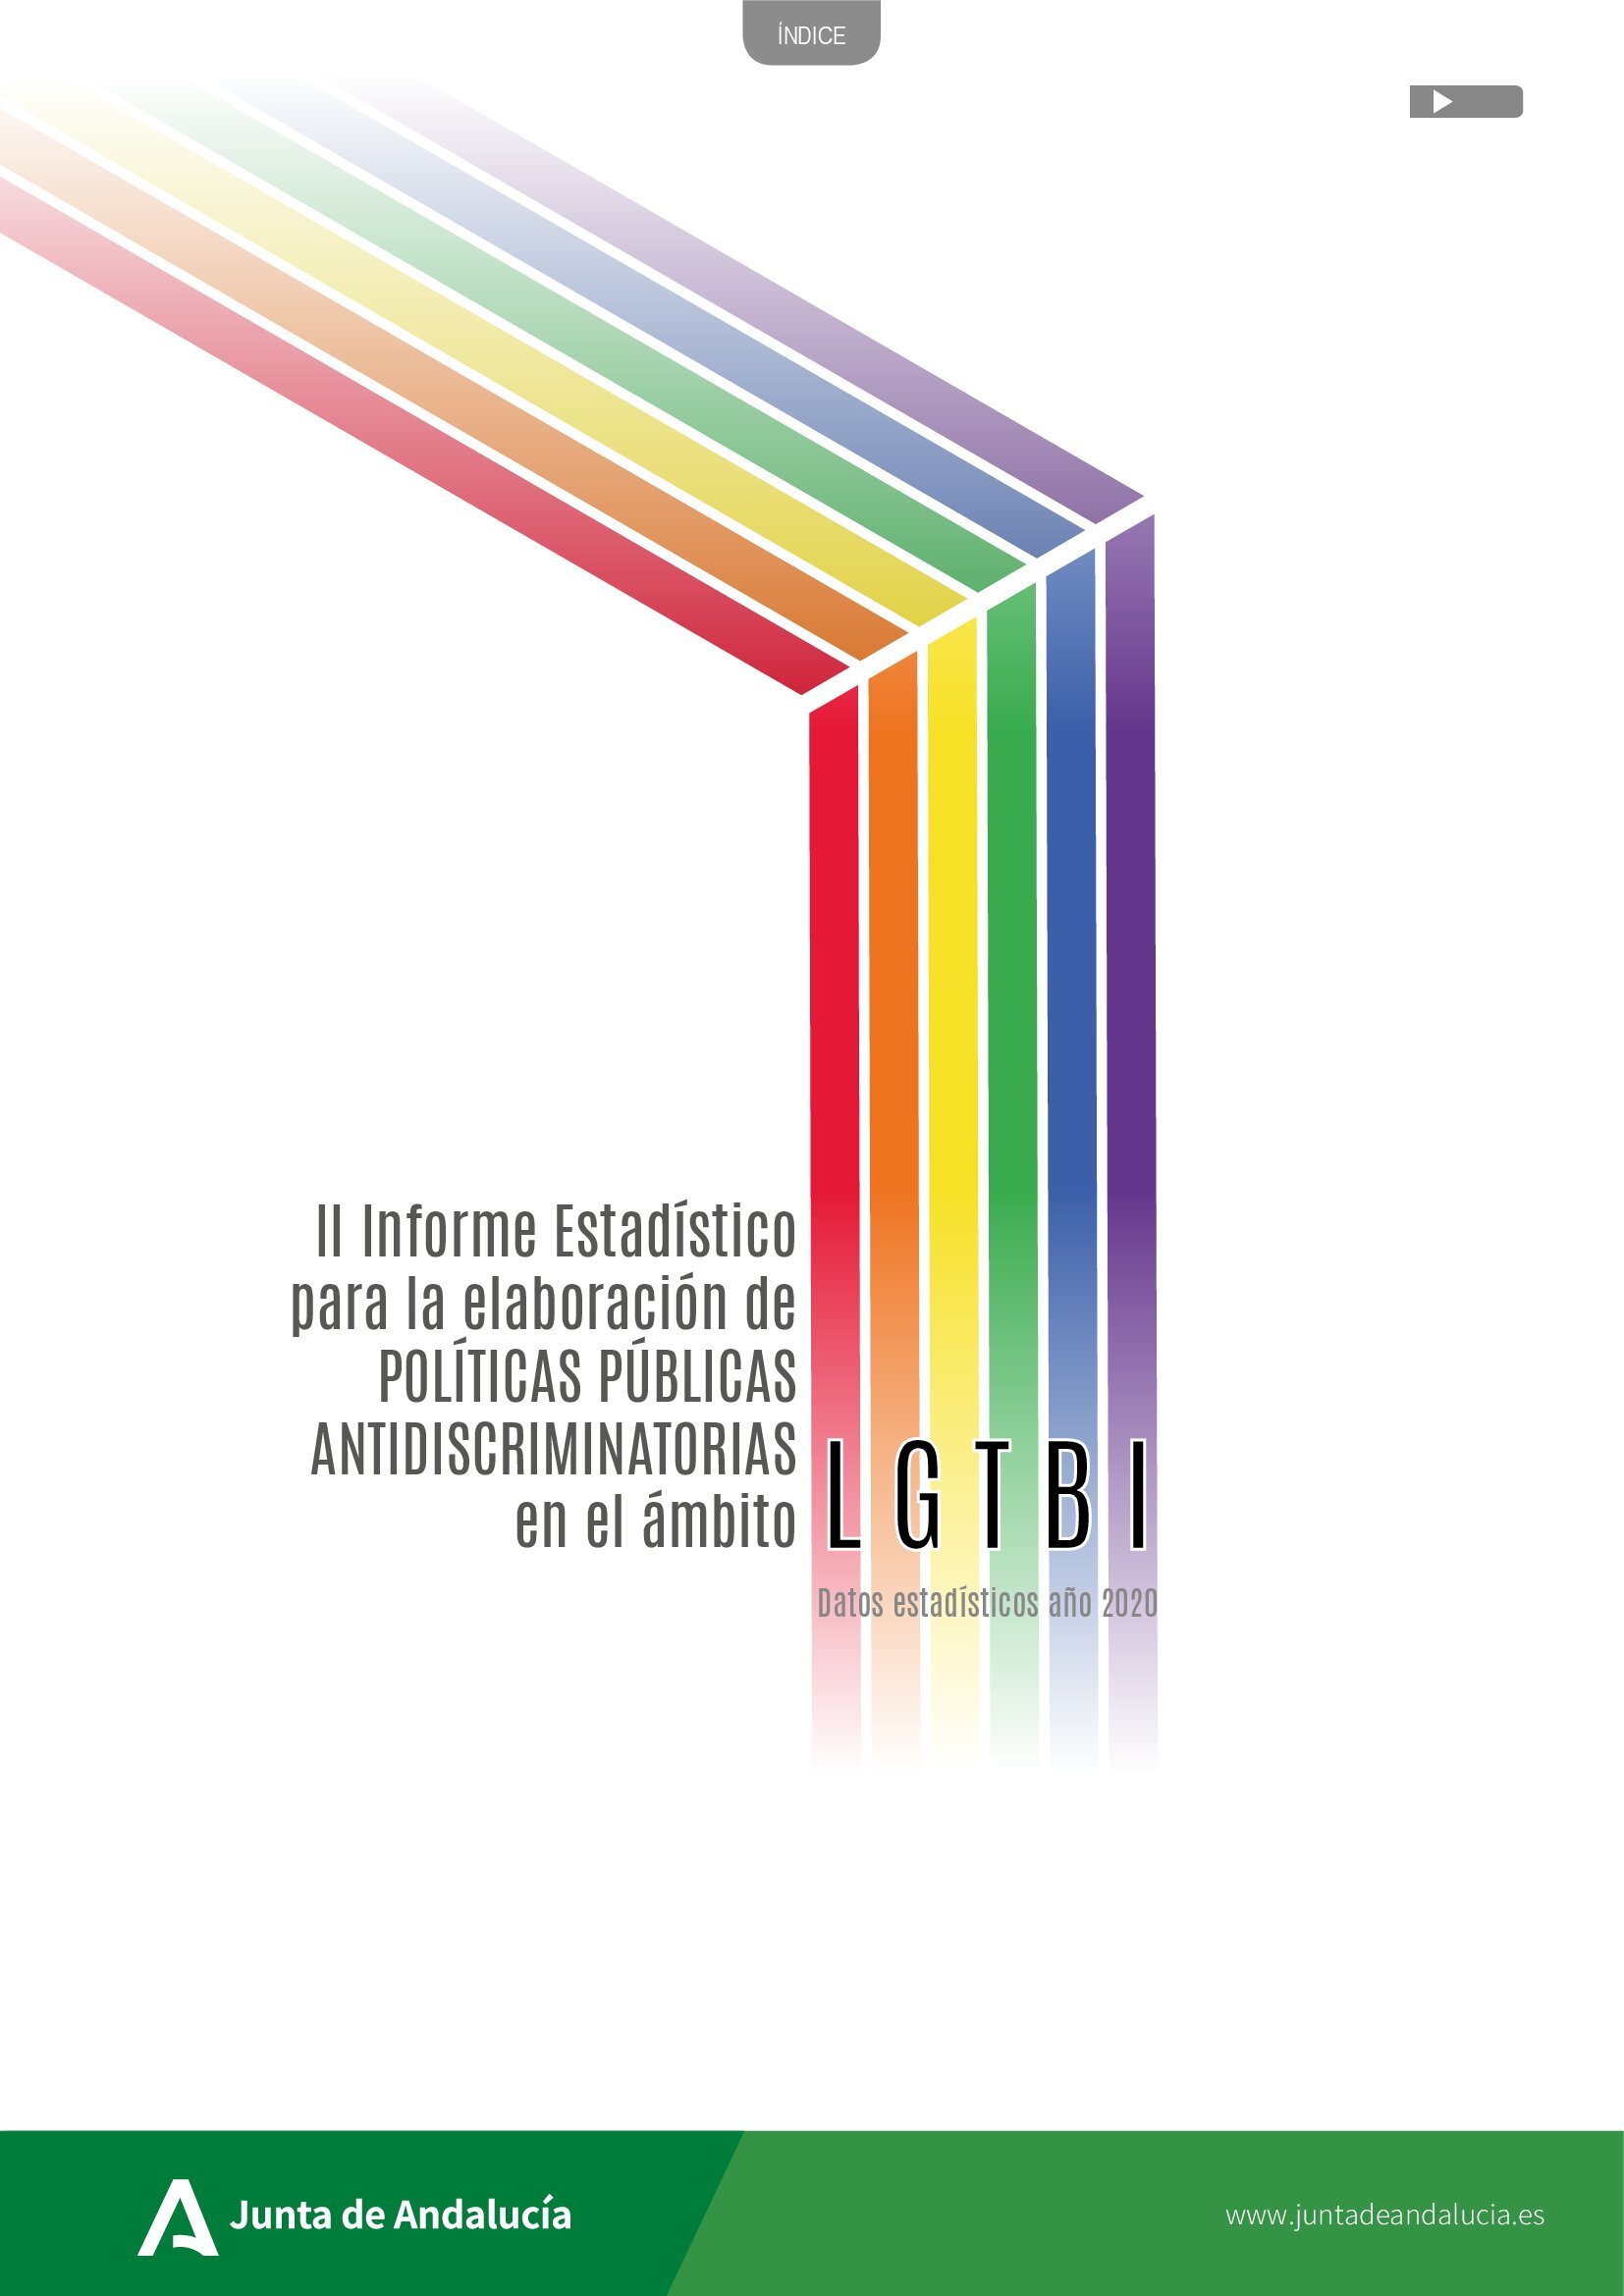 II Informe estadístico para la elaboración de políticas públicas antidiscriminatorias en el ámbito LGTBI